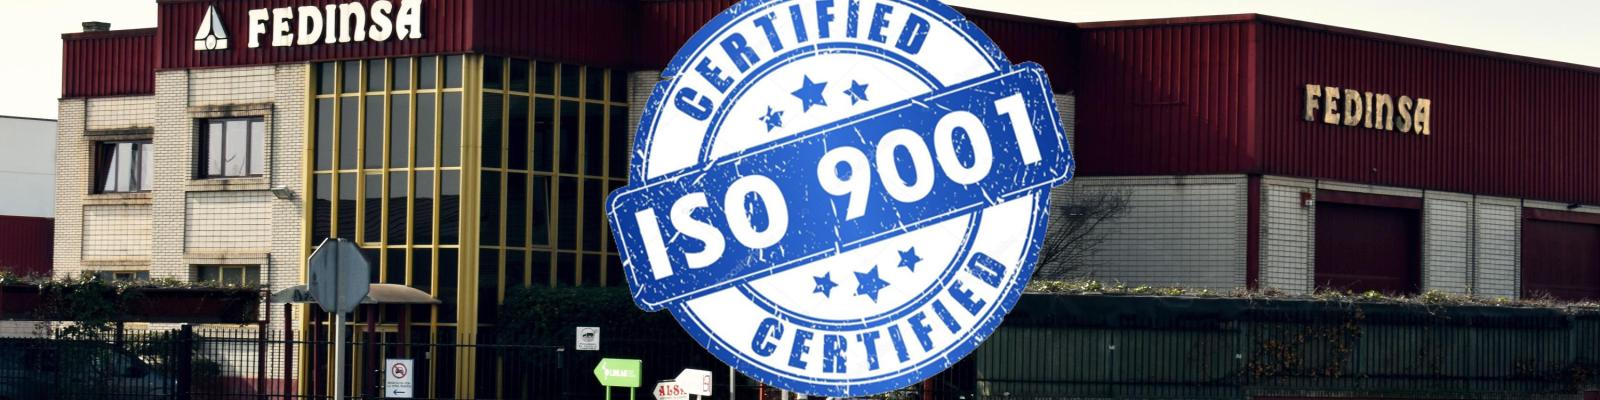 FEDINSA renueva el certificado ISO-9001: Fábrica